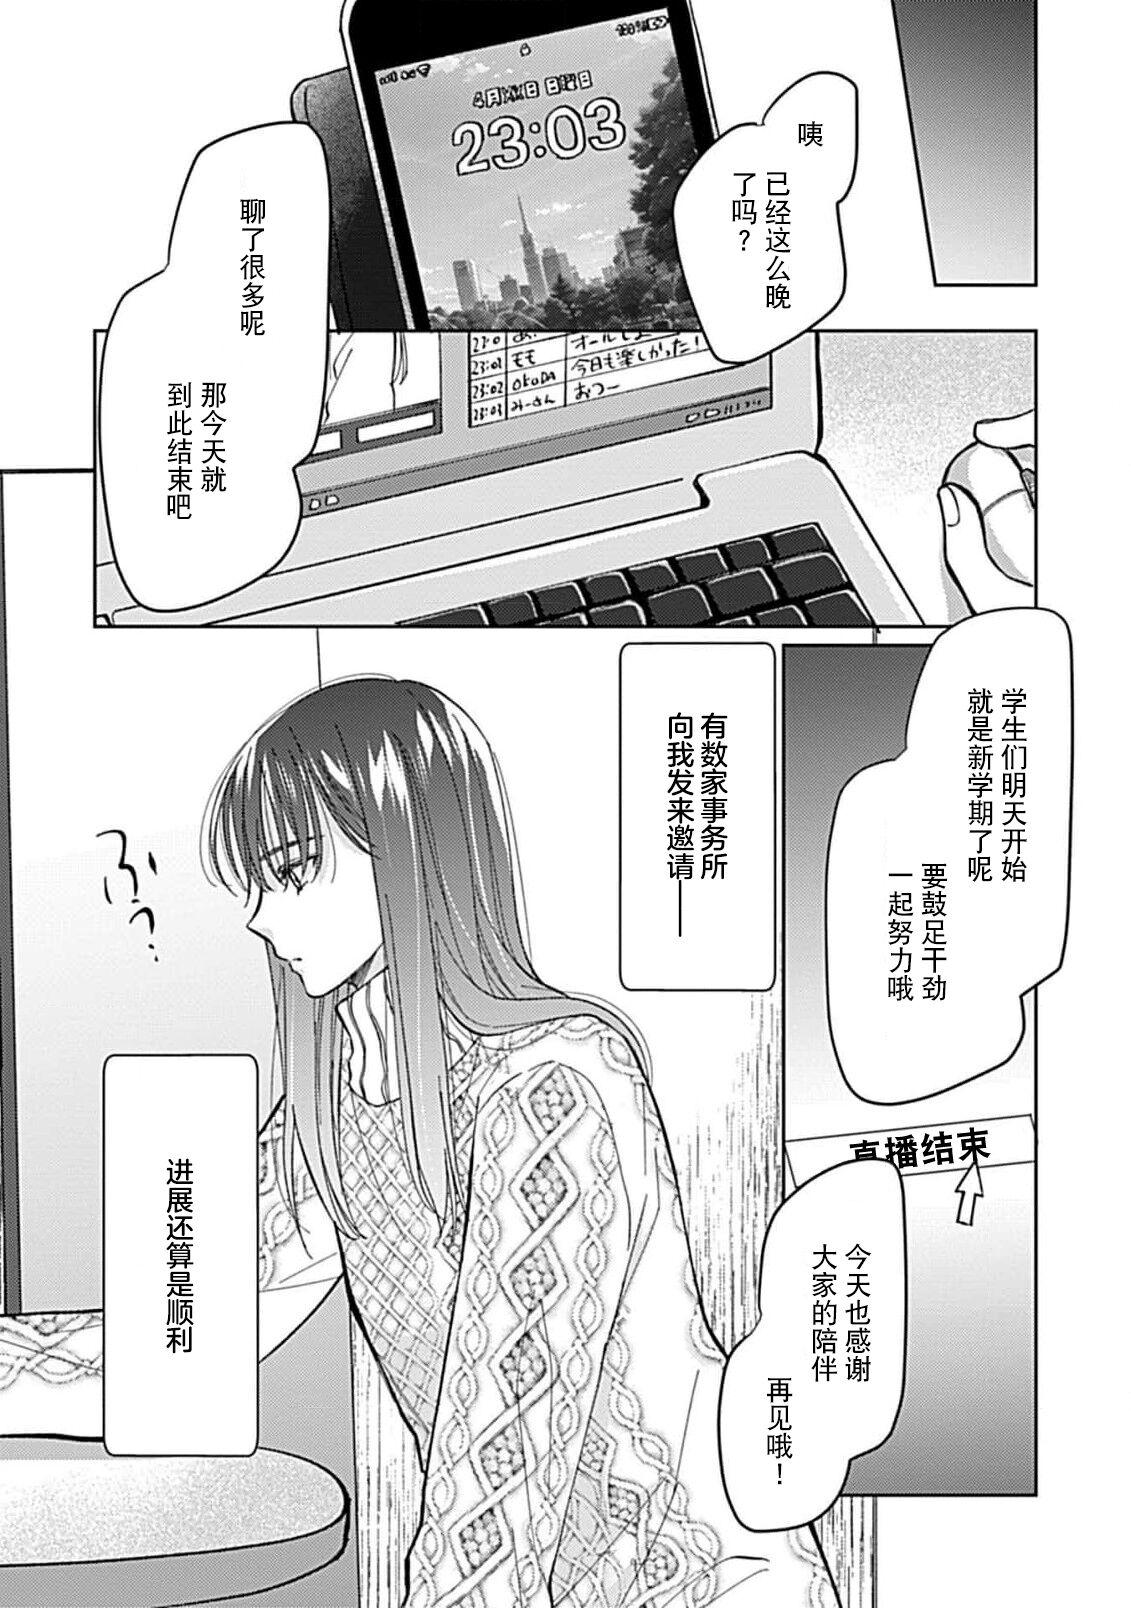 Chupando Koi to Himitsu wa Utsuranai 1 - It doesn't show love and secret. | 恋情与秘密难以映照 1 Massage - Page 8